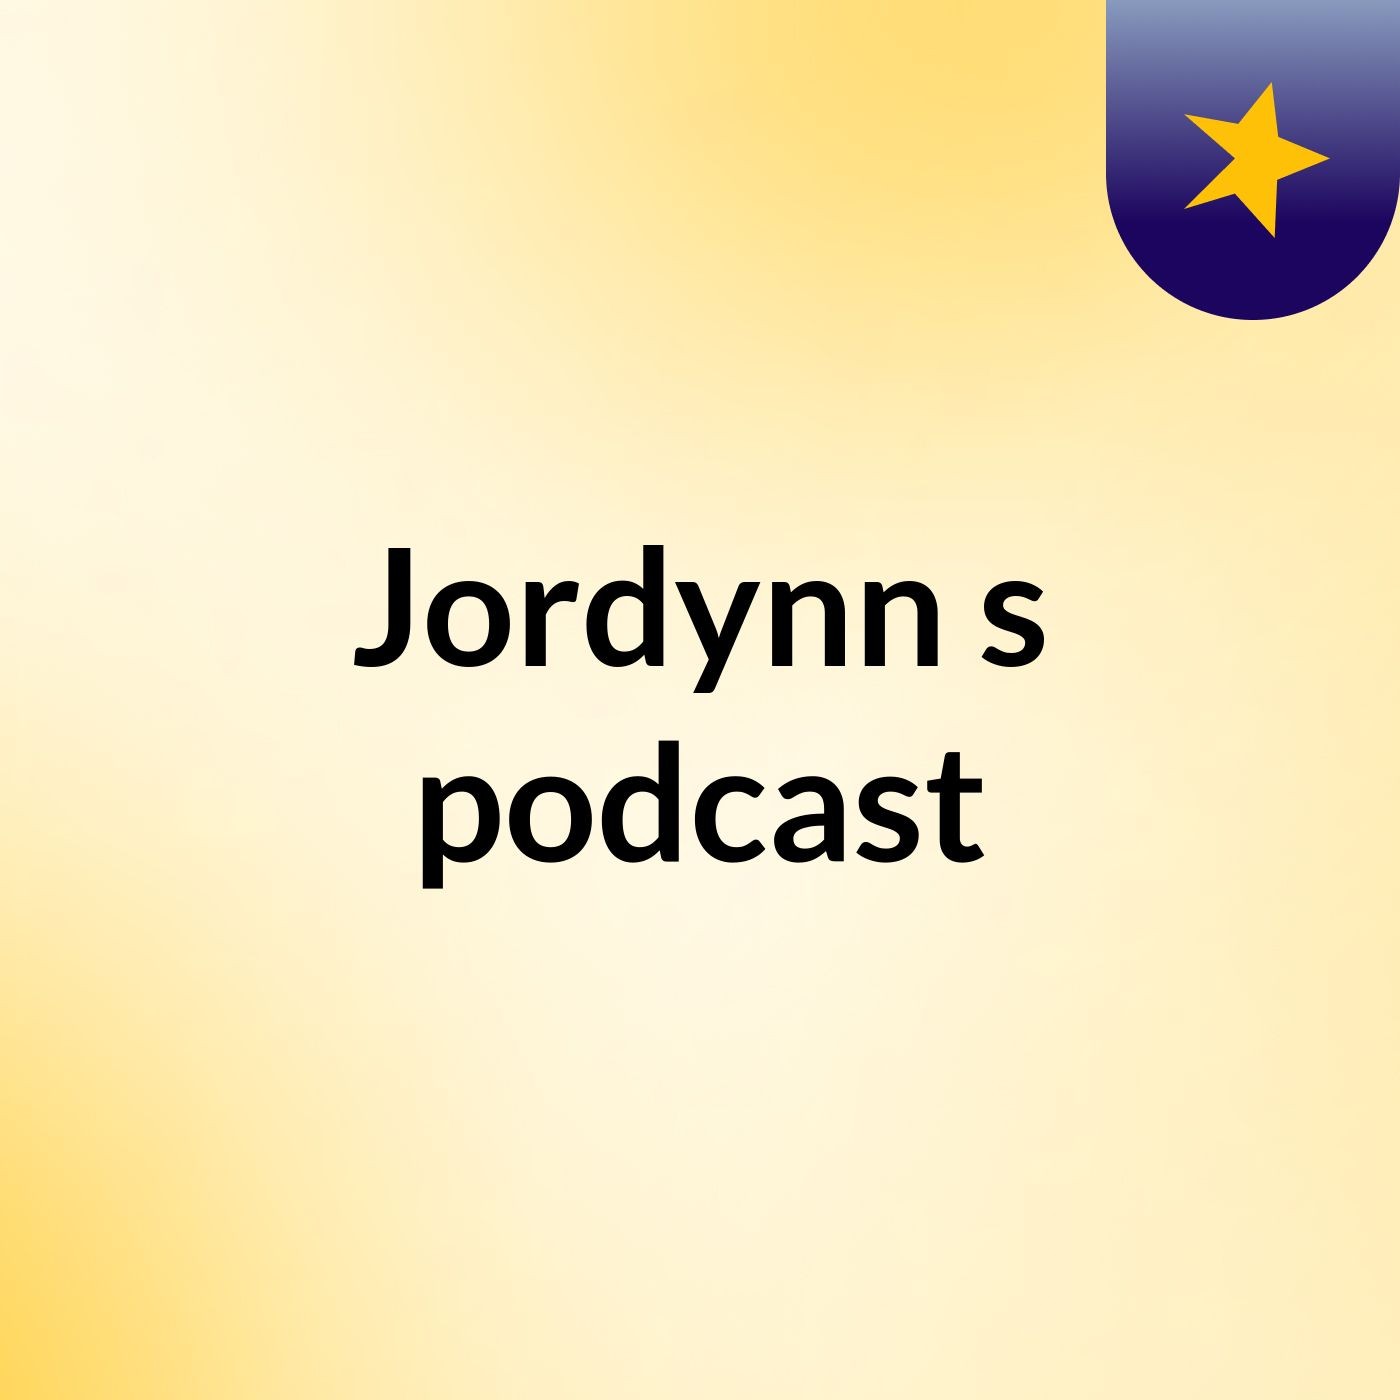 Episode 4 - Jordynn's podcast